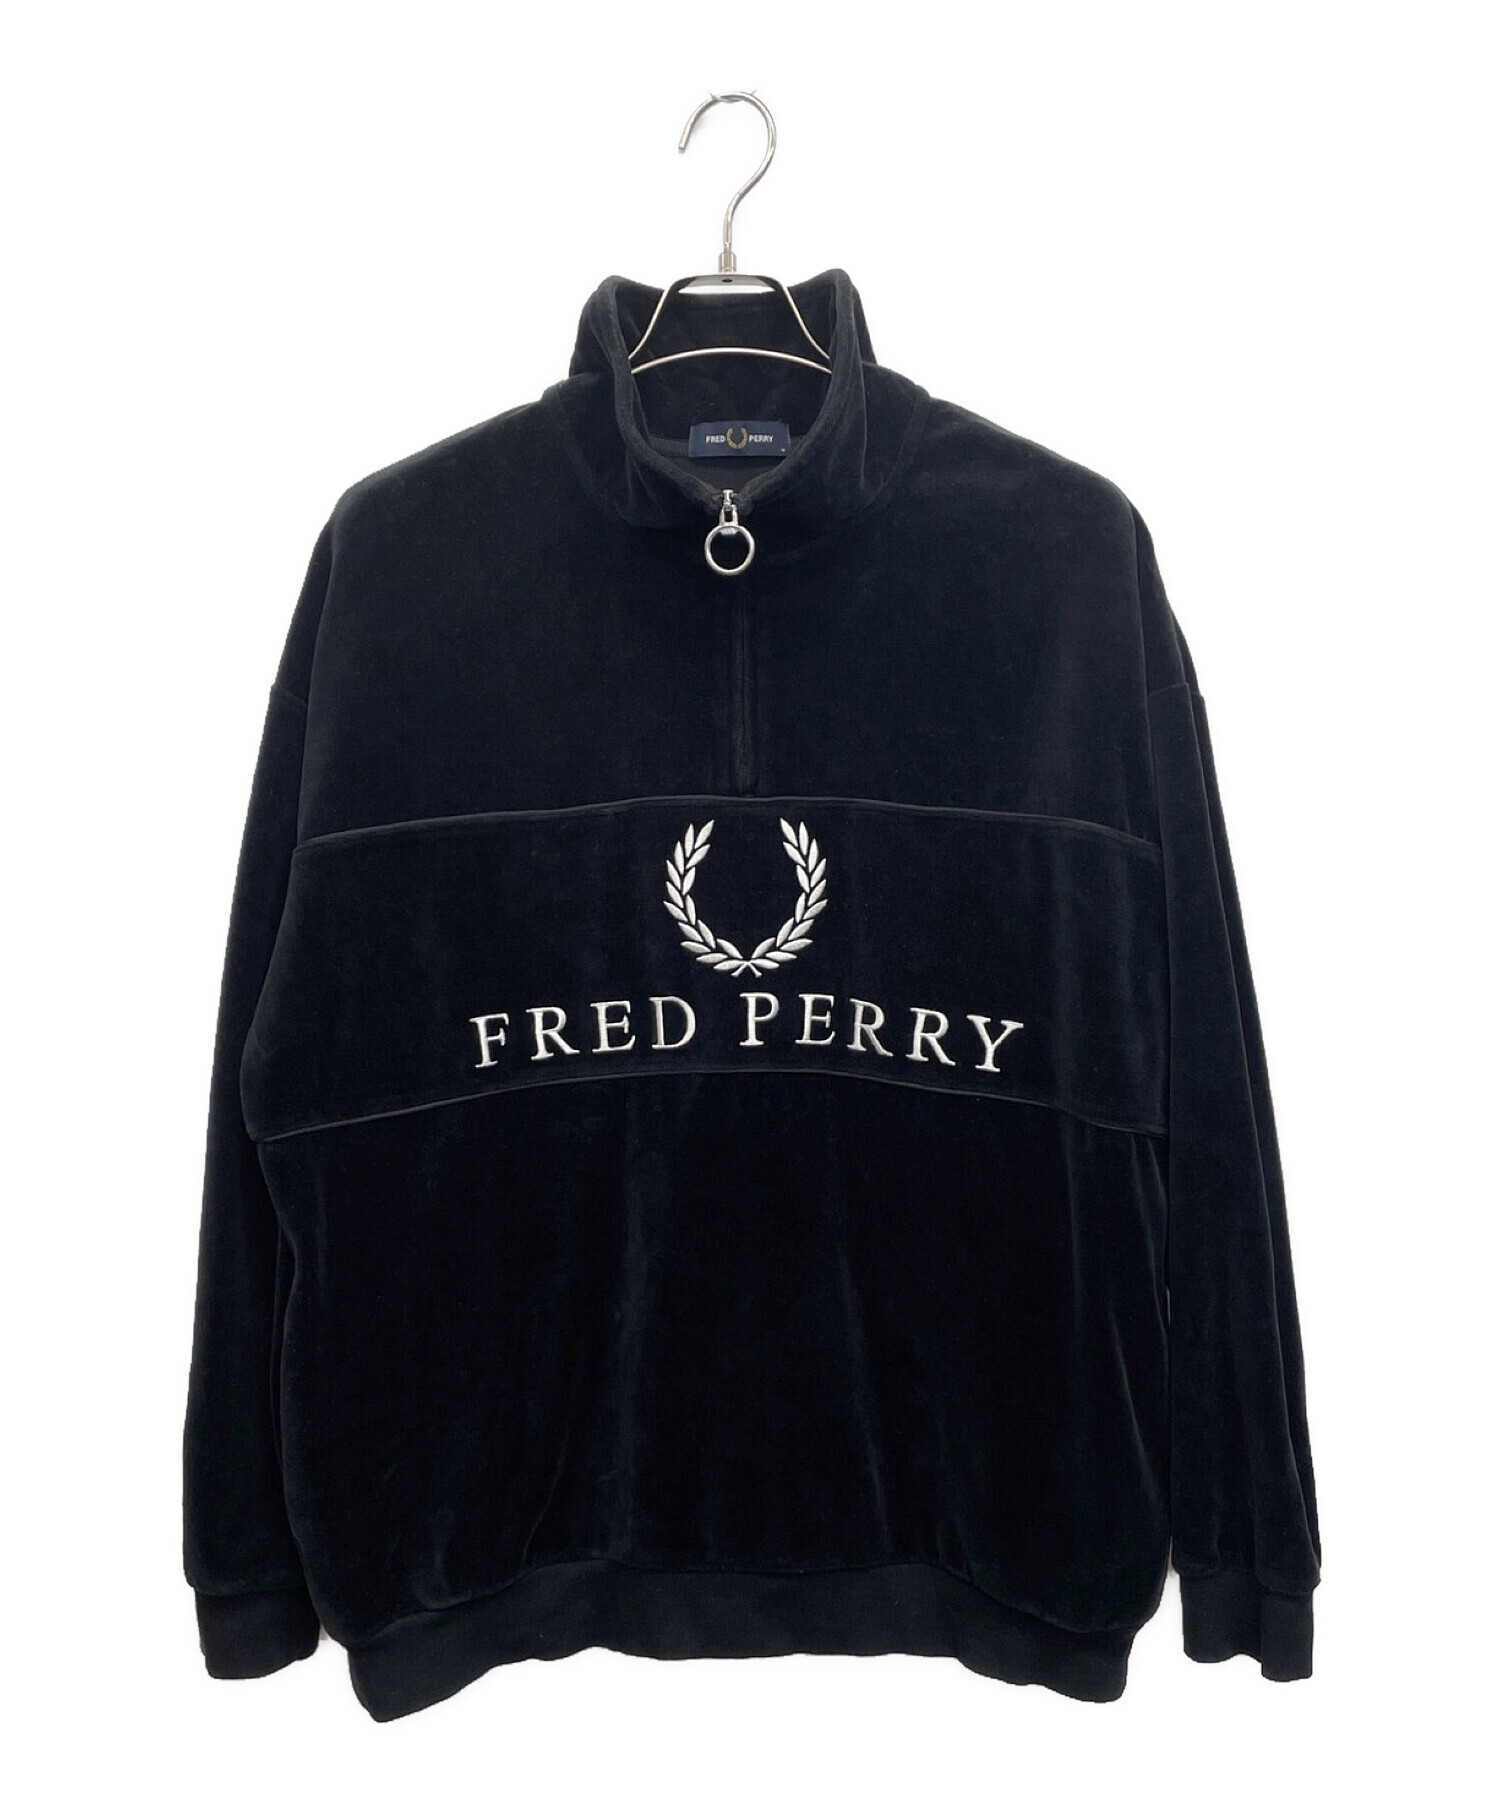 FRED PERRY (フレッドペリー) 90sロゴ ベロアハーフジップ サイズ:M